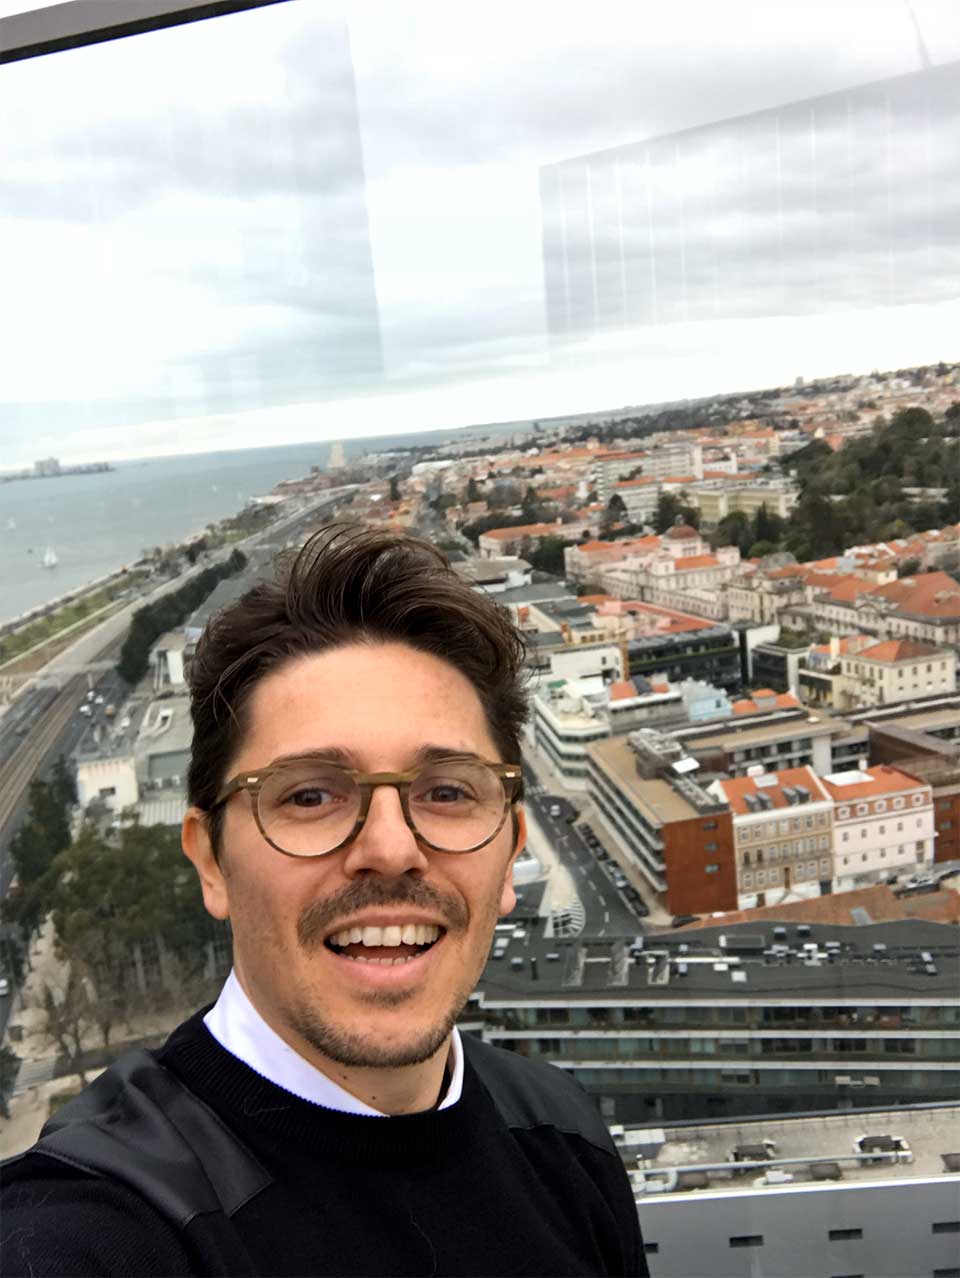 Pedro durante a experiência Pilar7, com vista sobre Lisboa em fundo.